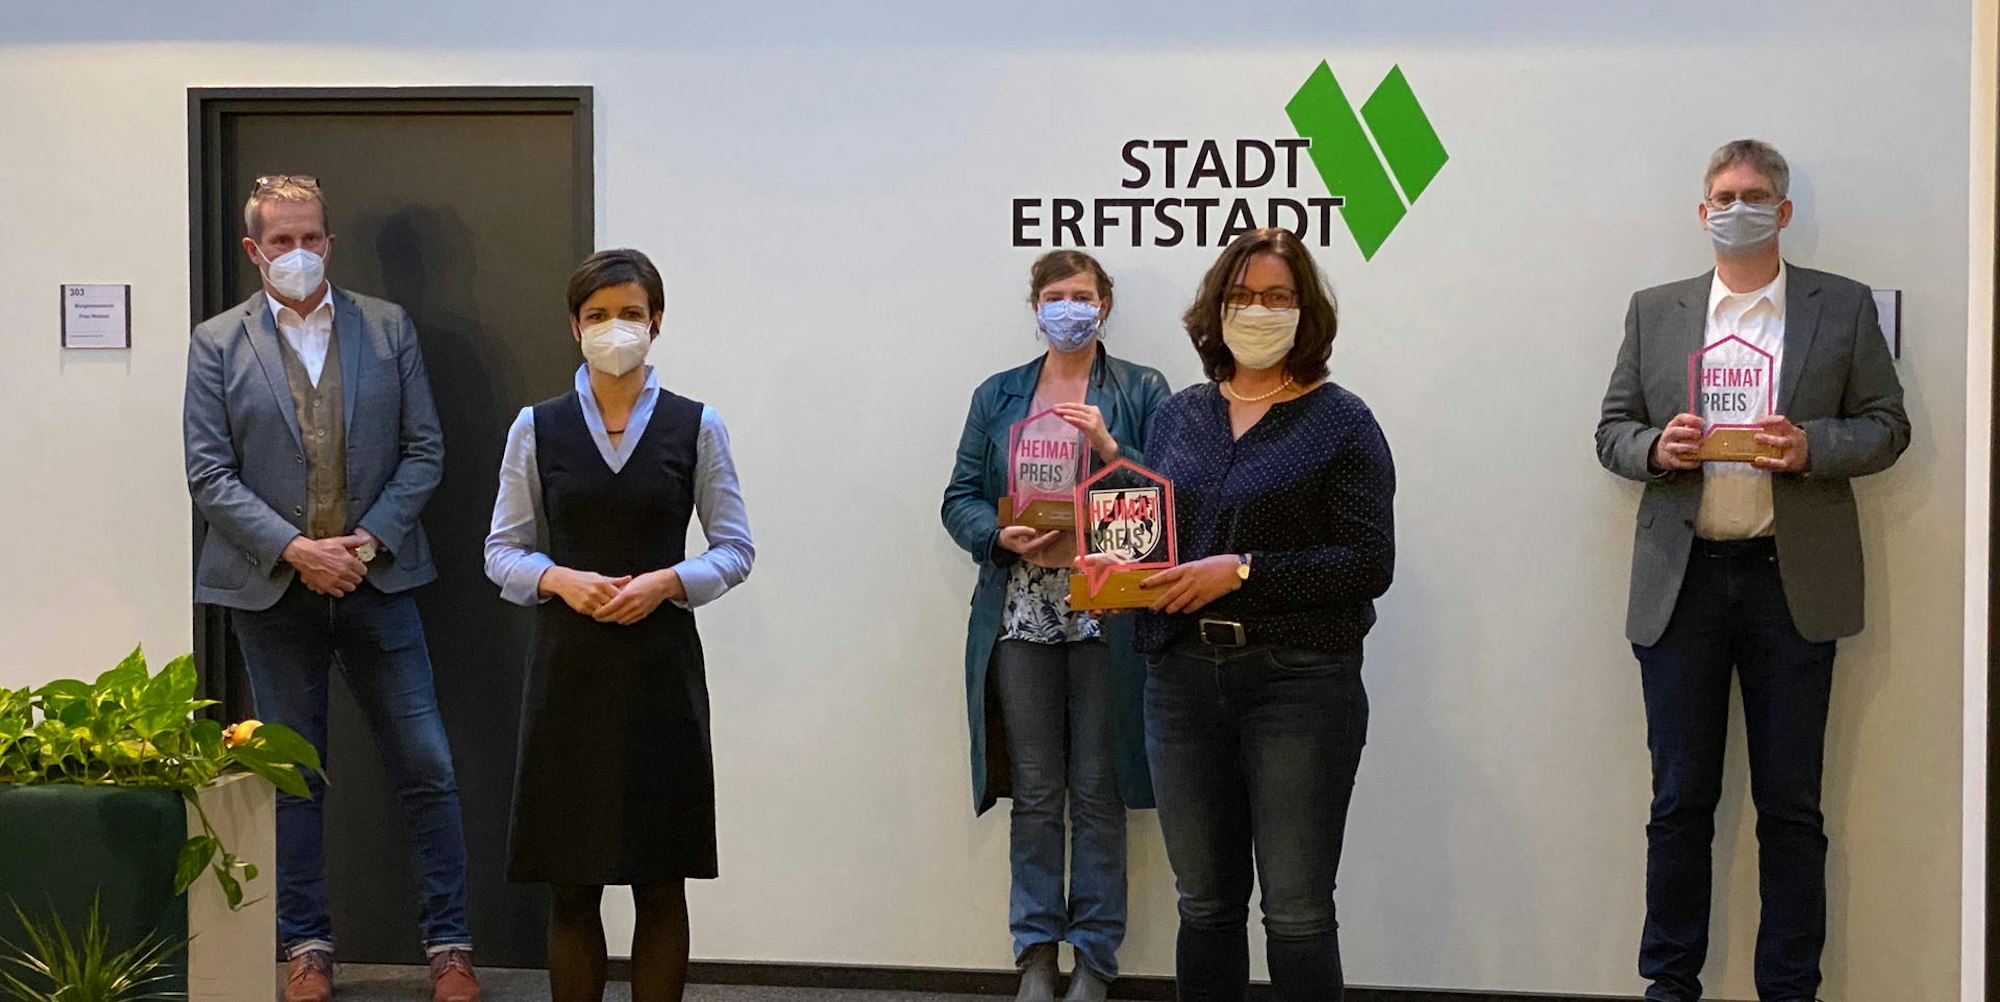 Clean up Erftstadt ist mit dem Heimatpreis ausgezeichnet worden.